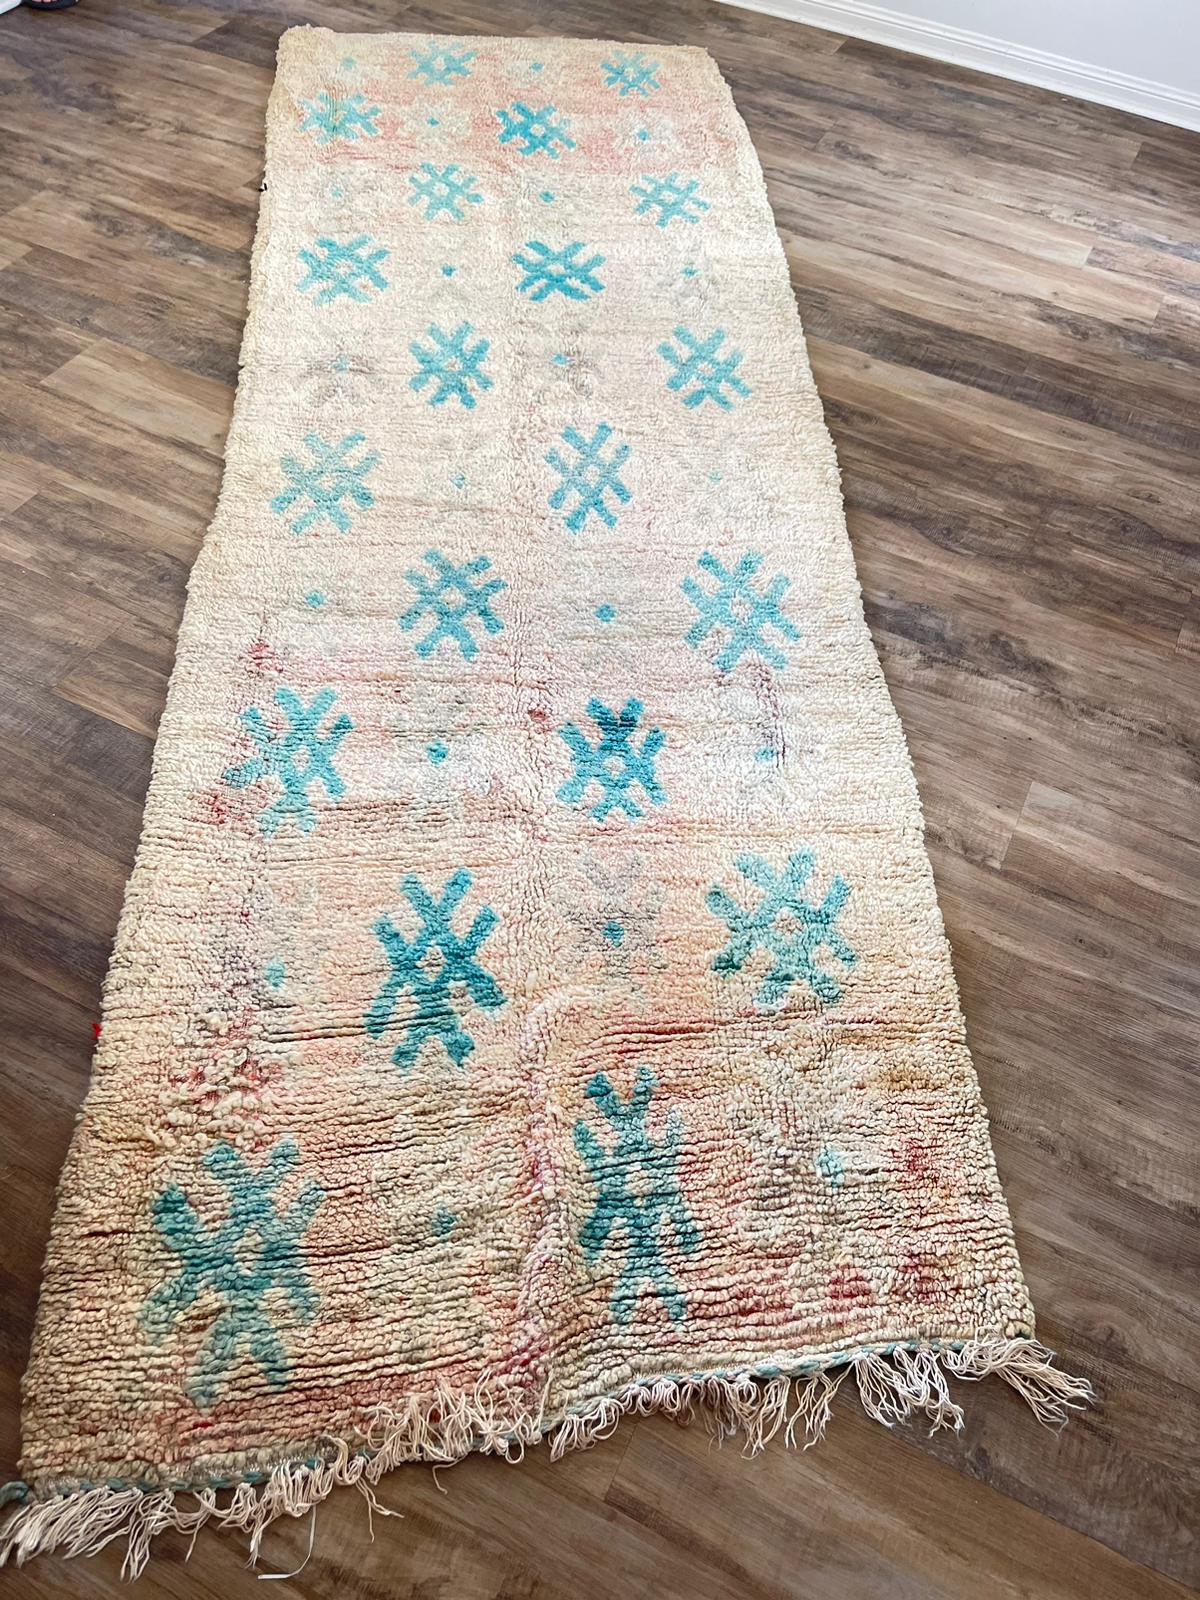 peach vintage Moroccan rug with blue symbols